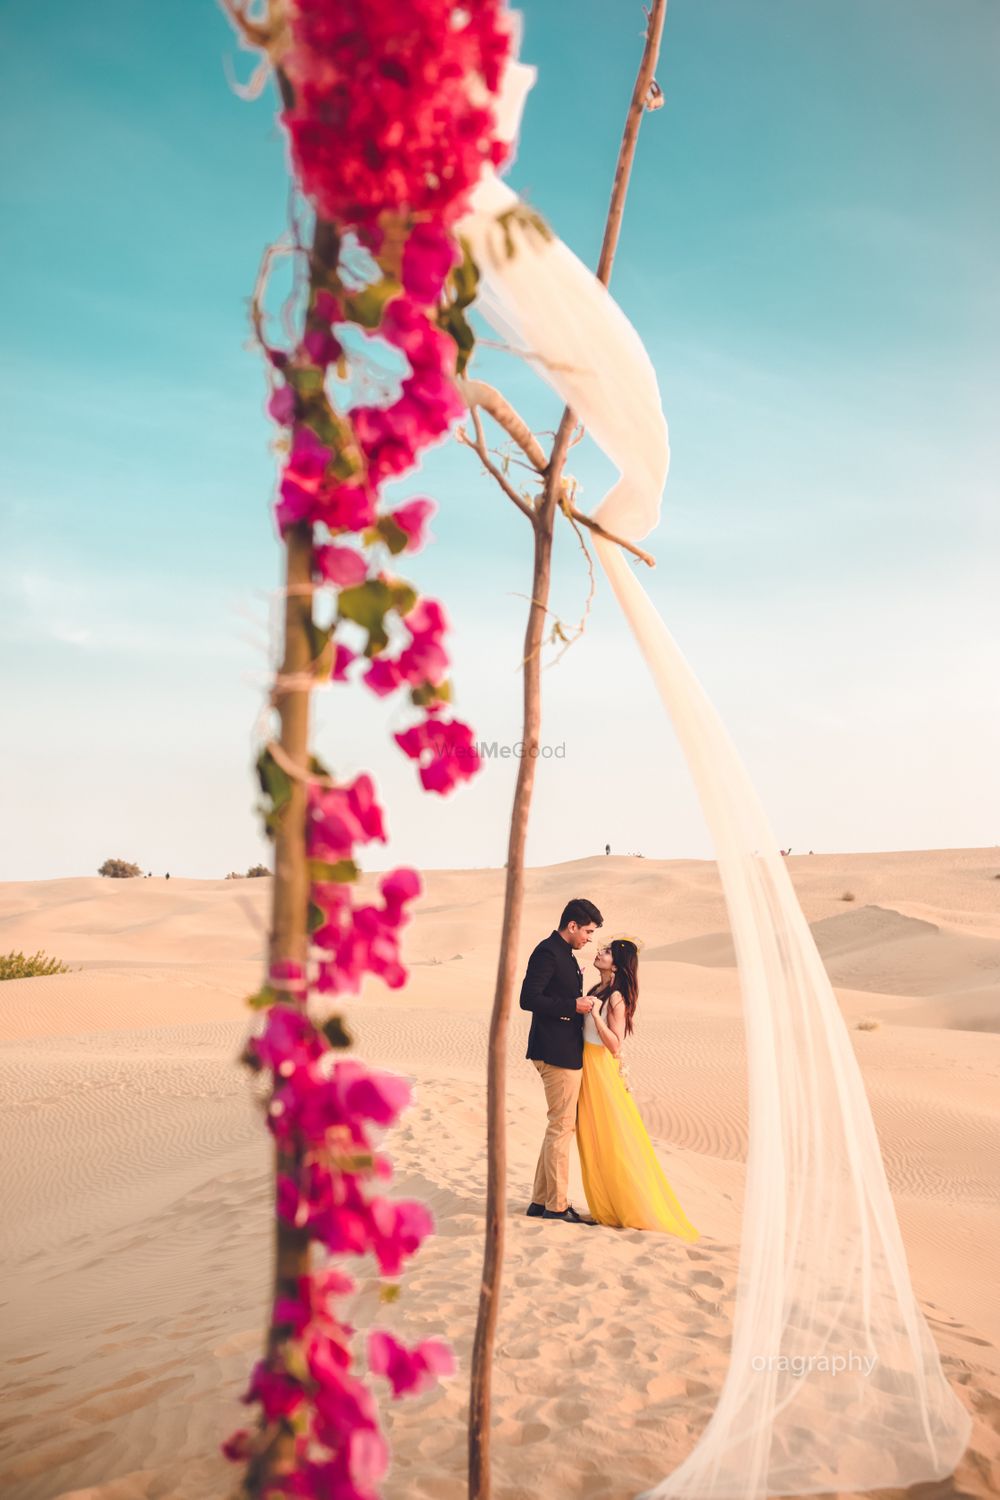 Photo of Desert pre wedding shoot idea for couple